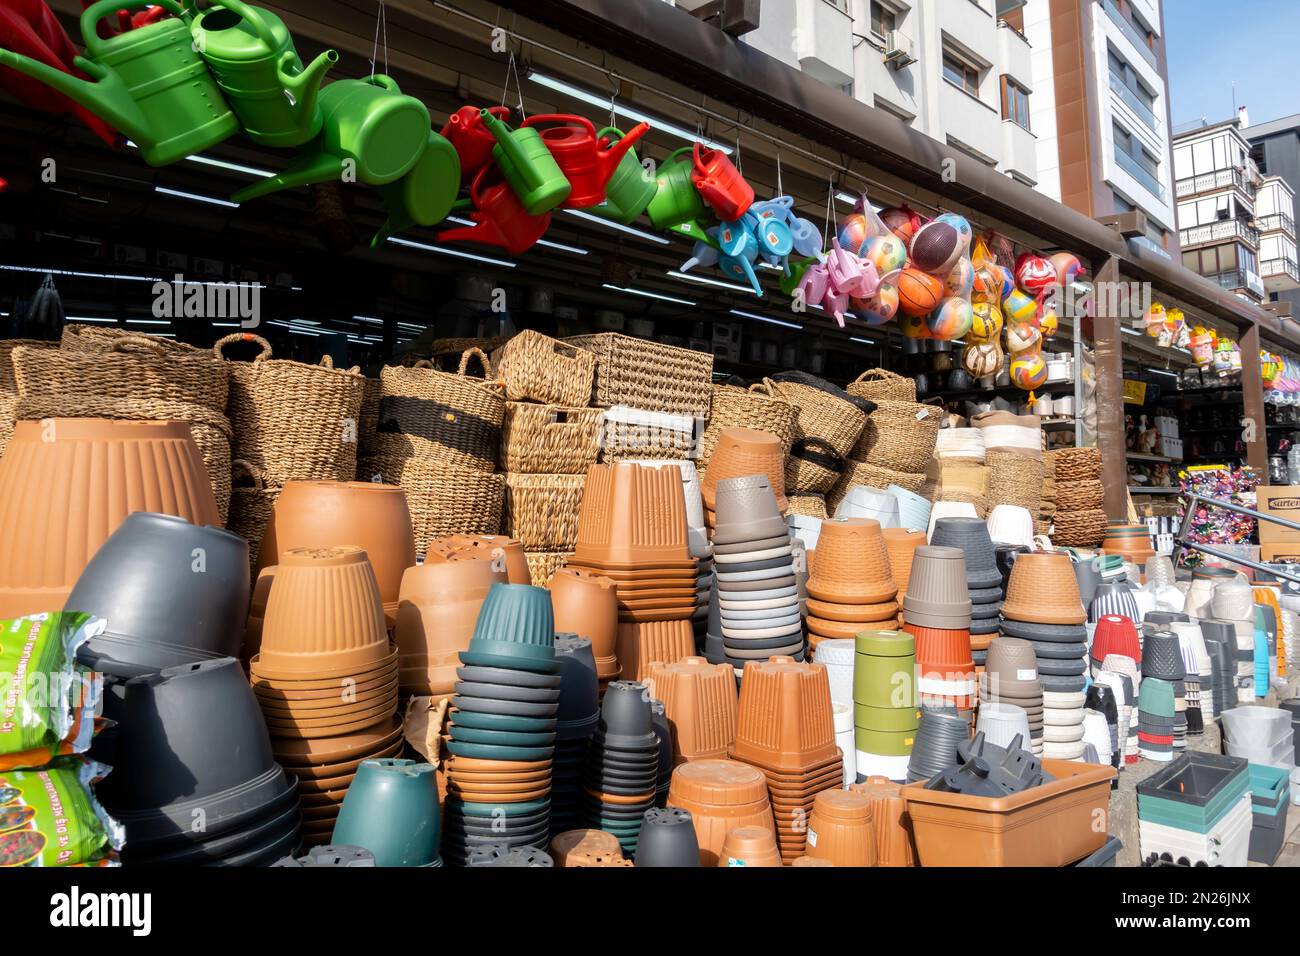 Pots de fleurs, arrosoirs en plastique vendus sur le marché de la rue à Ankara Turquie. Street stall en Turquie vendant l'équipement de jardinage de floraison Banque D'Images